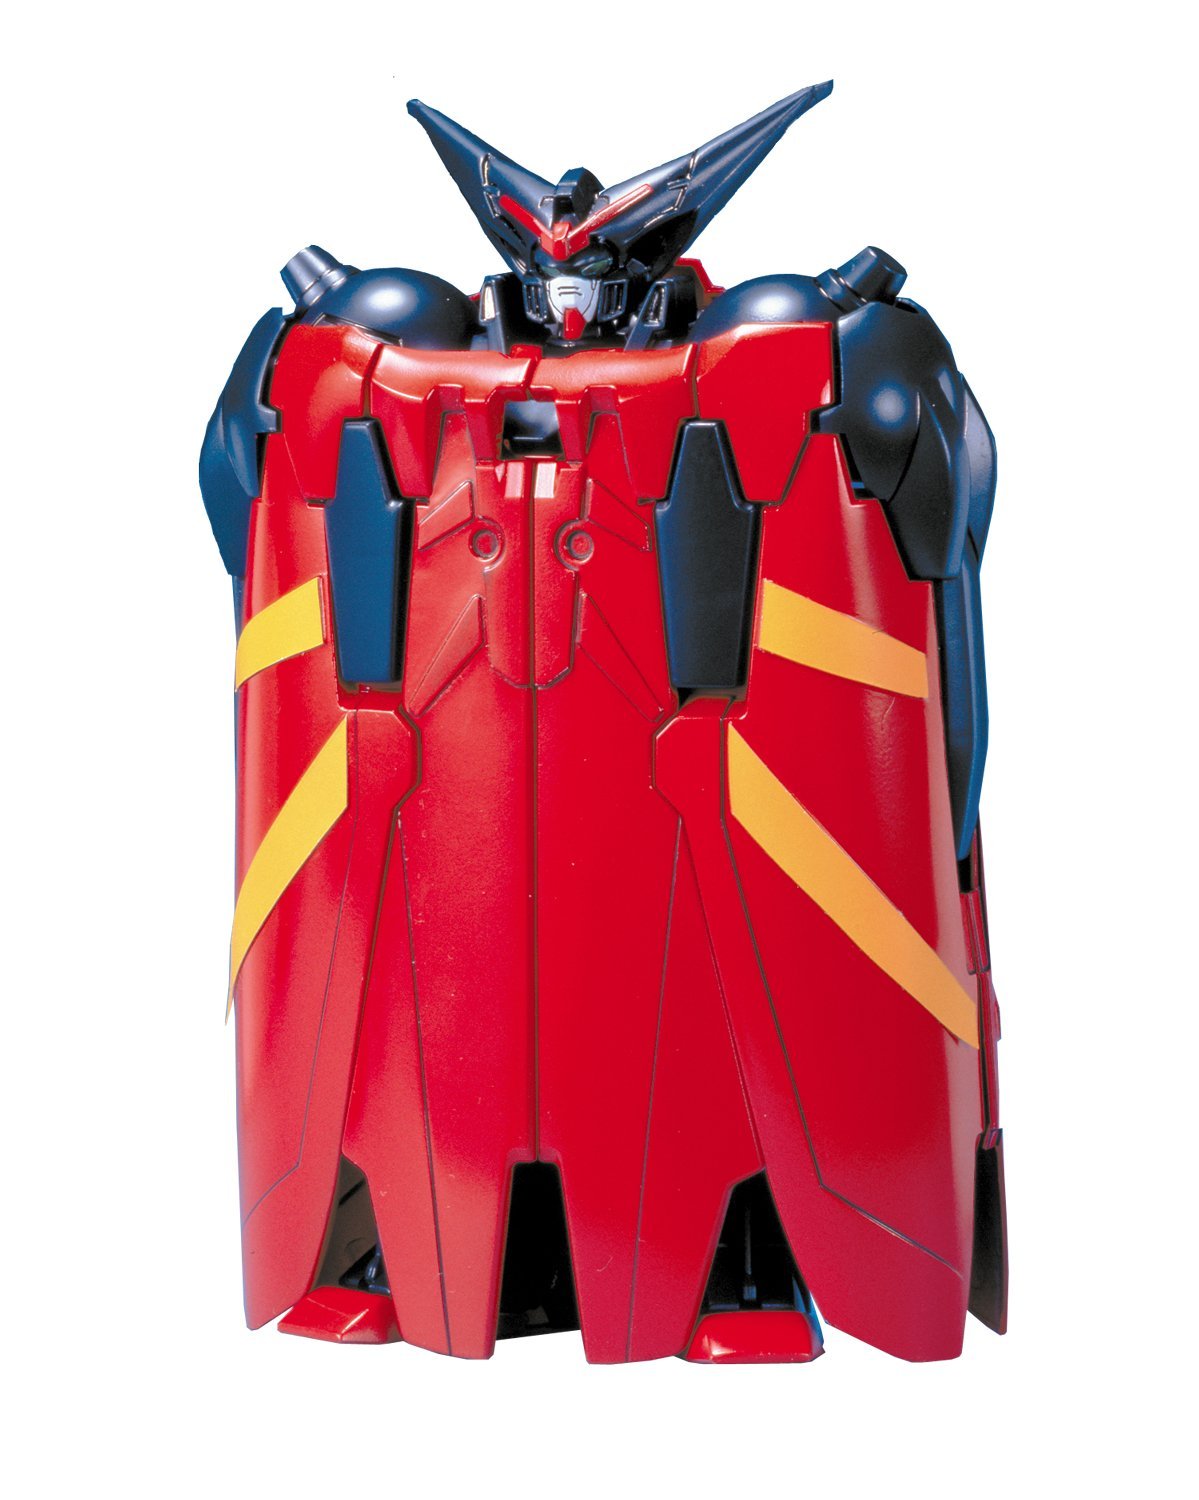 1/100 Master Gundam